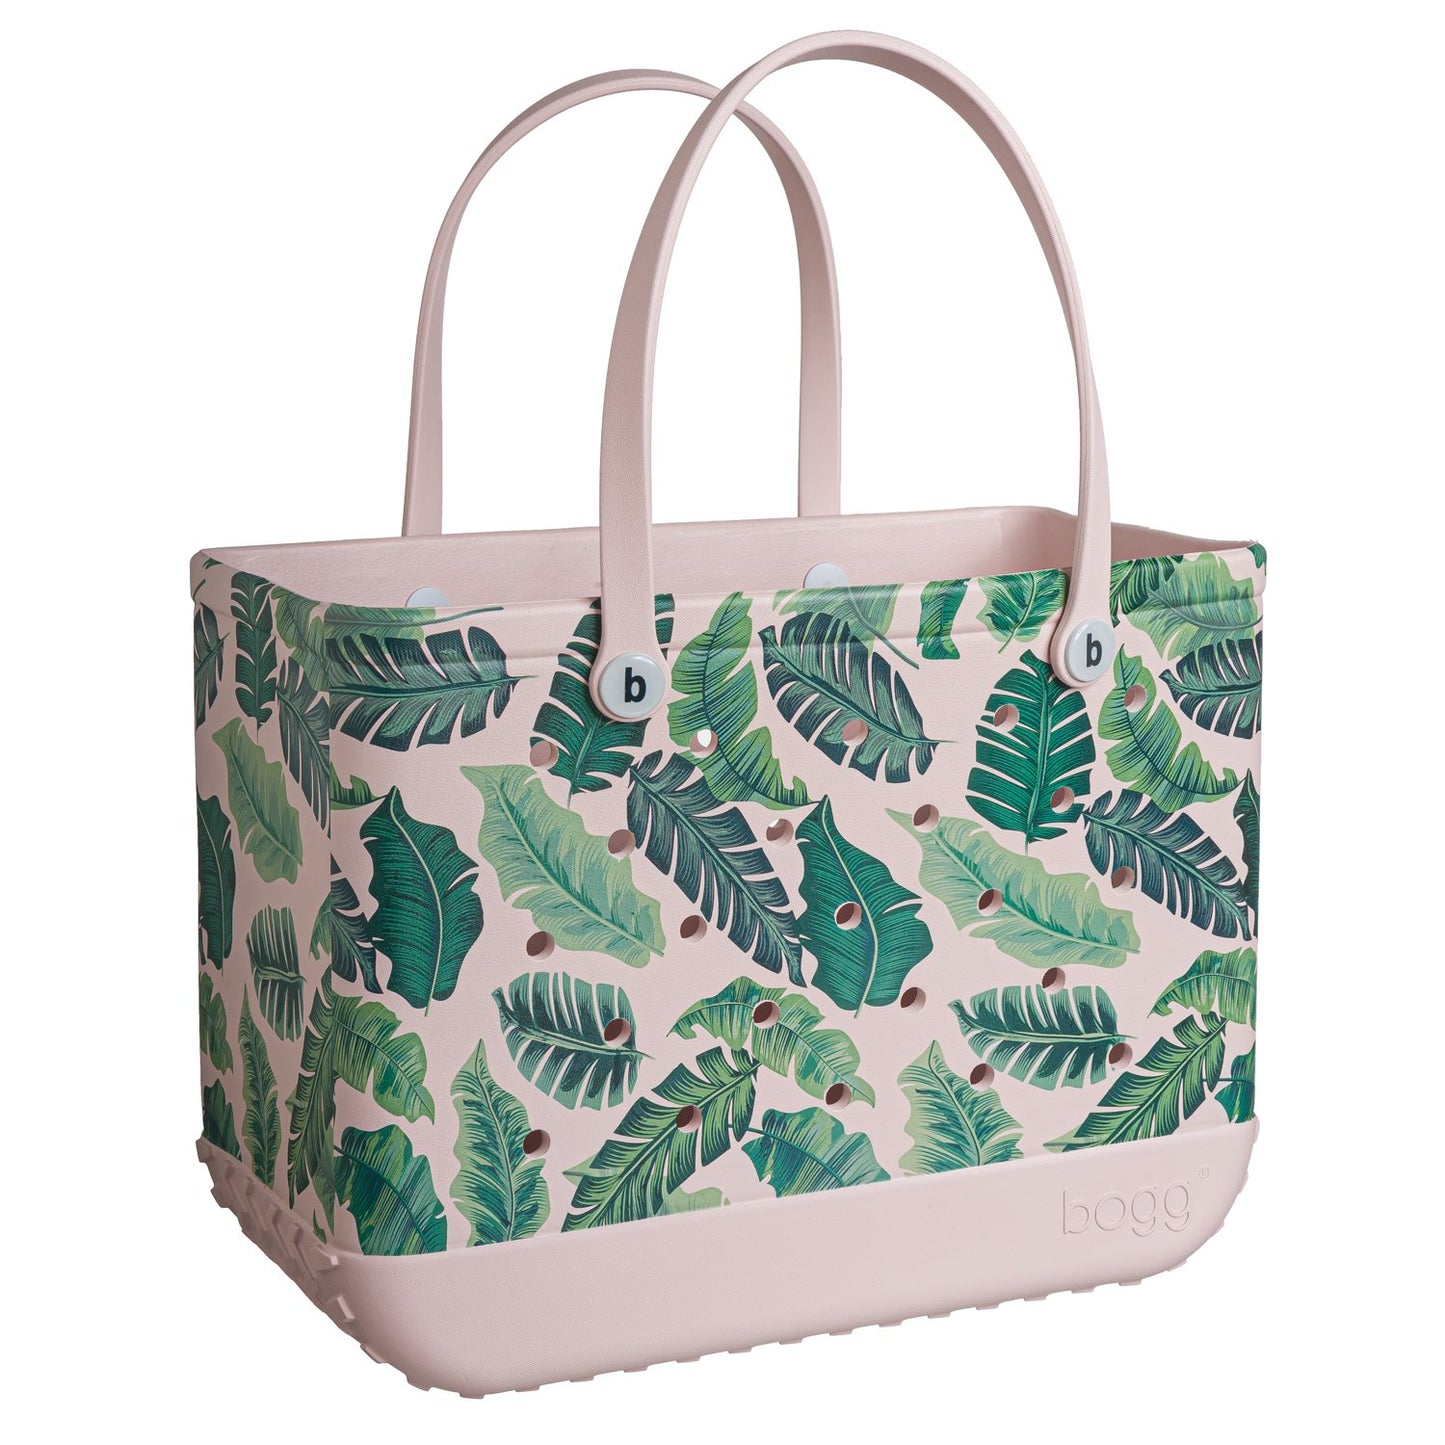 Palm Leaf Print Large Bogg Bag